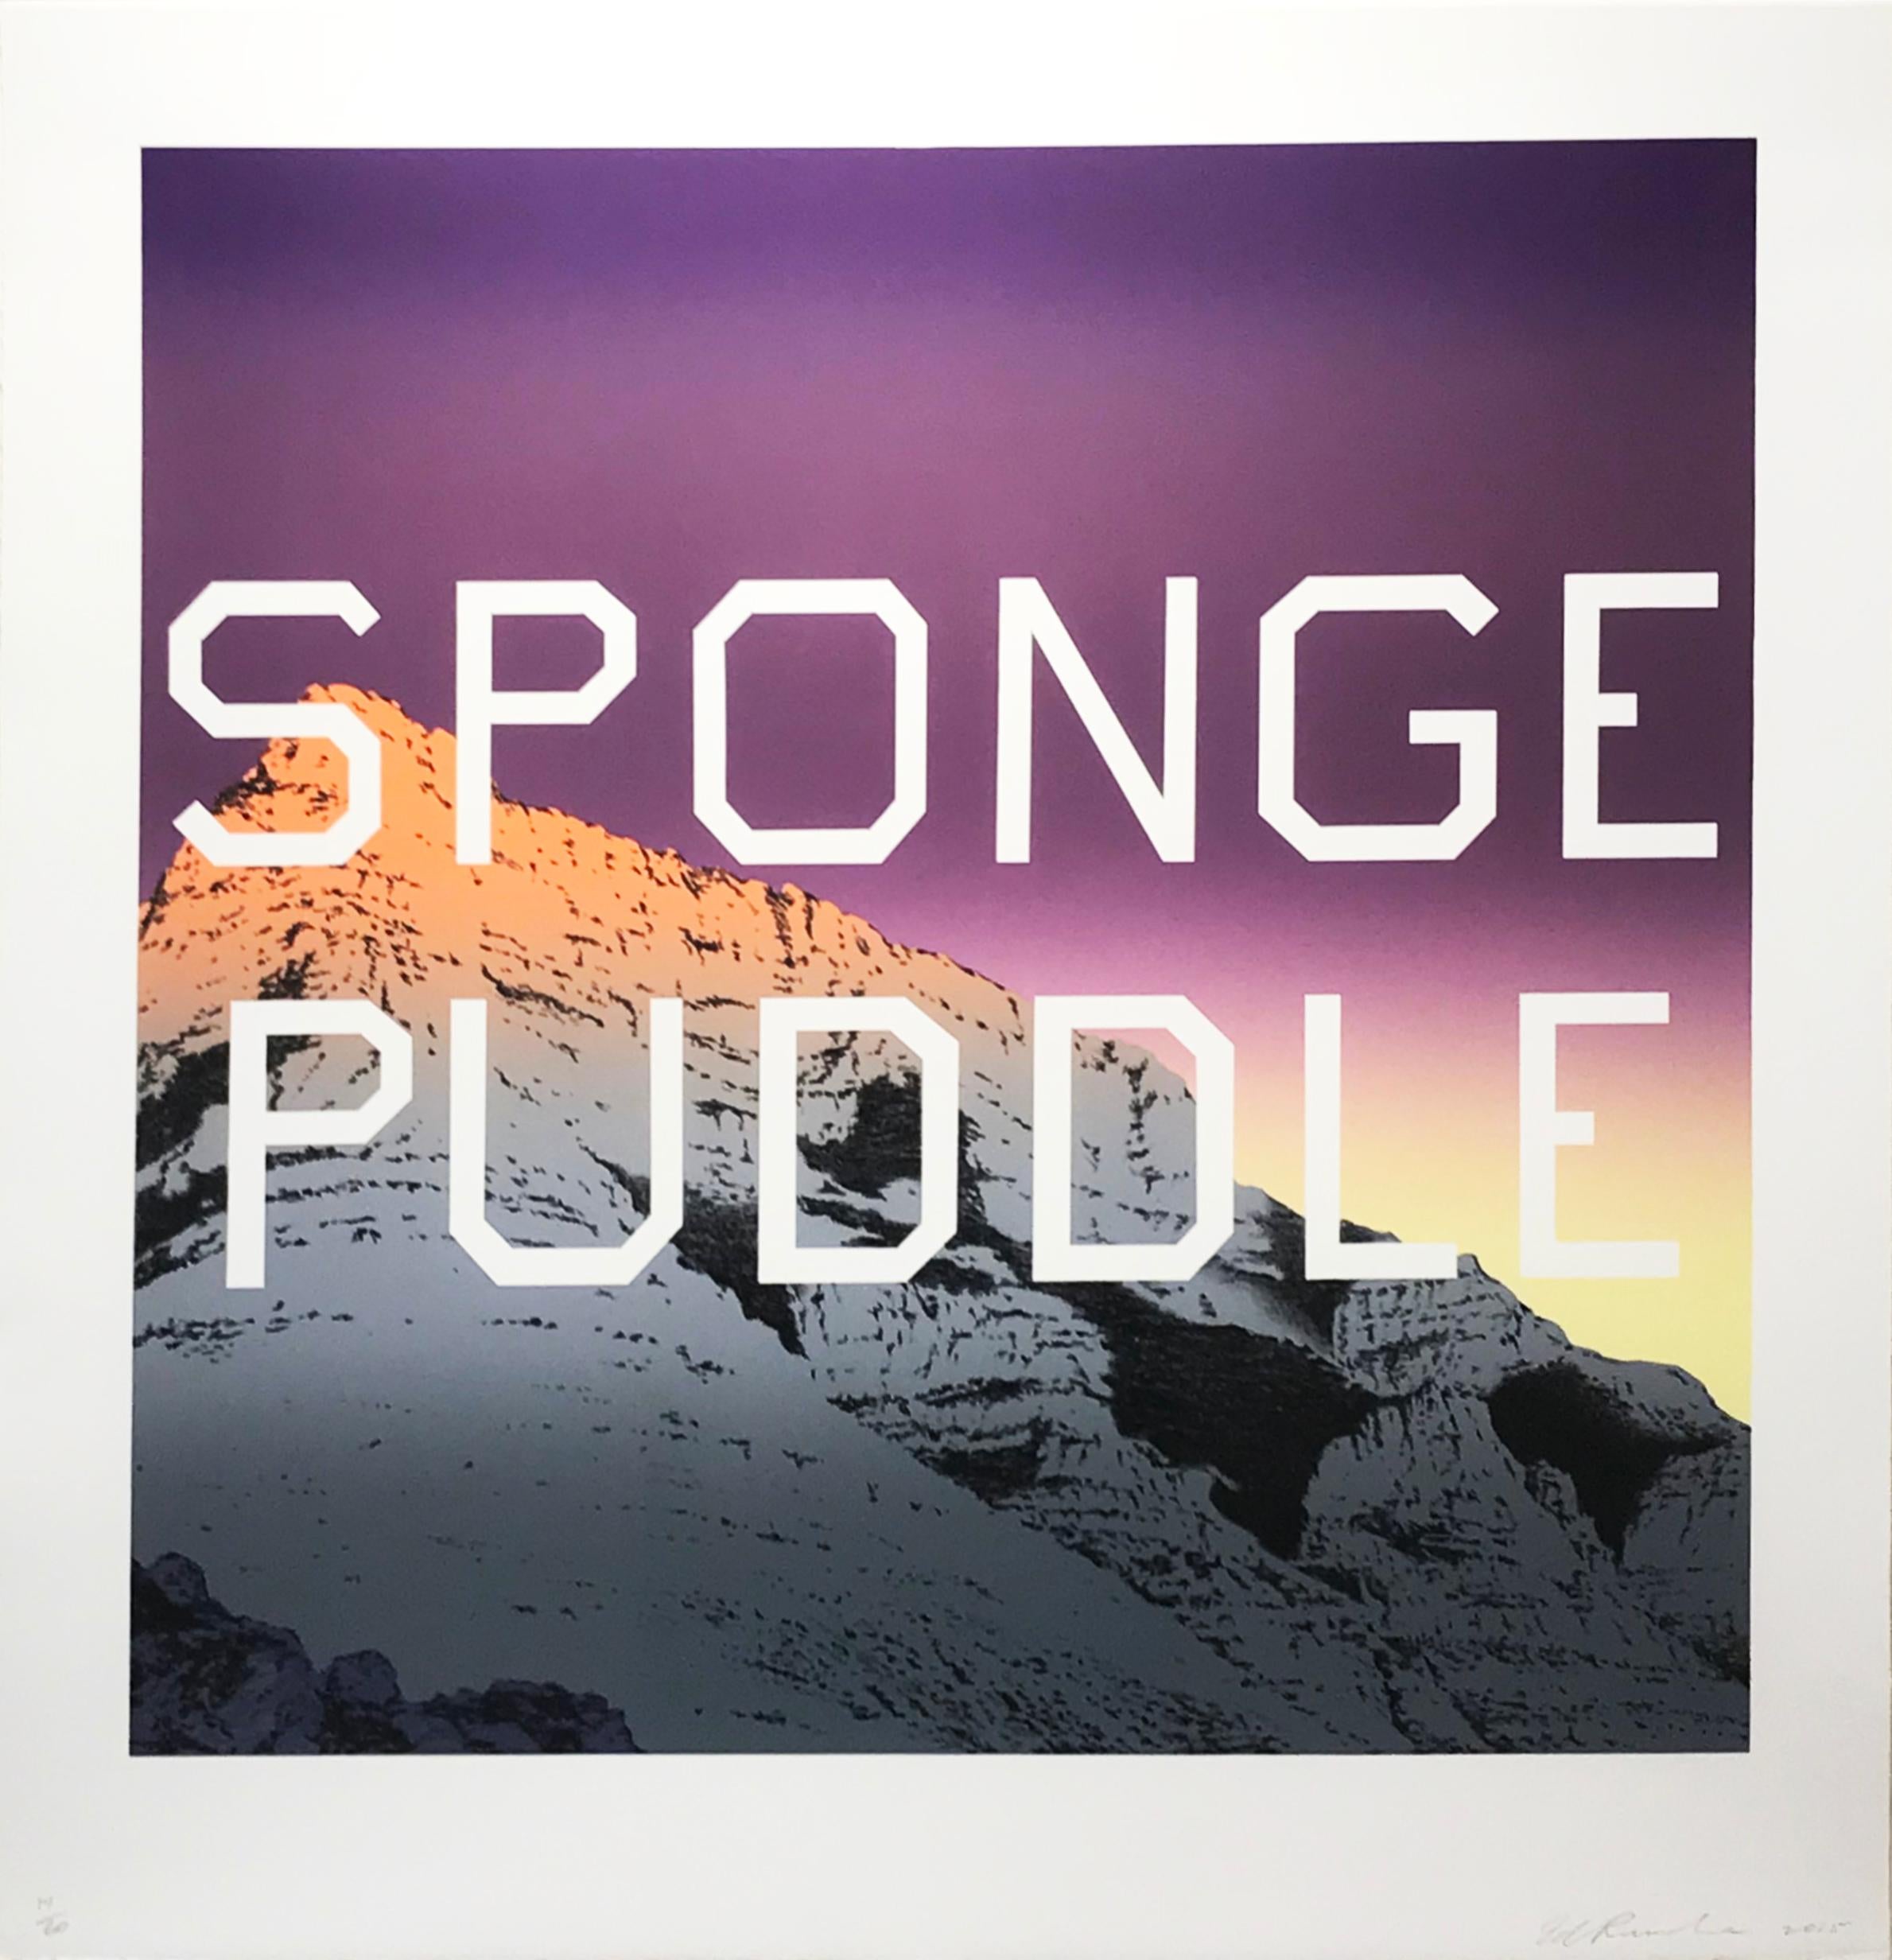 puddle sponges